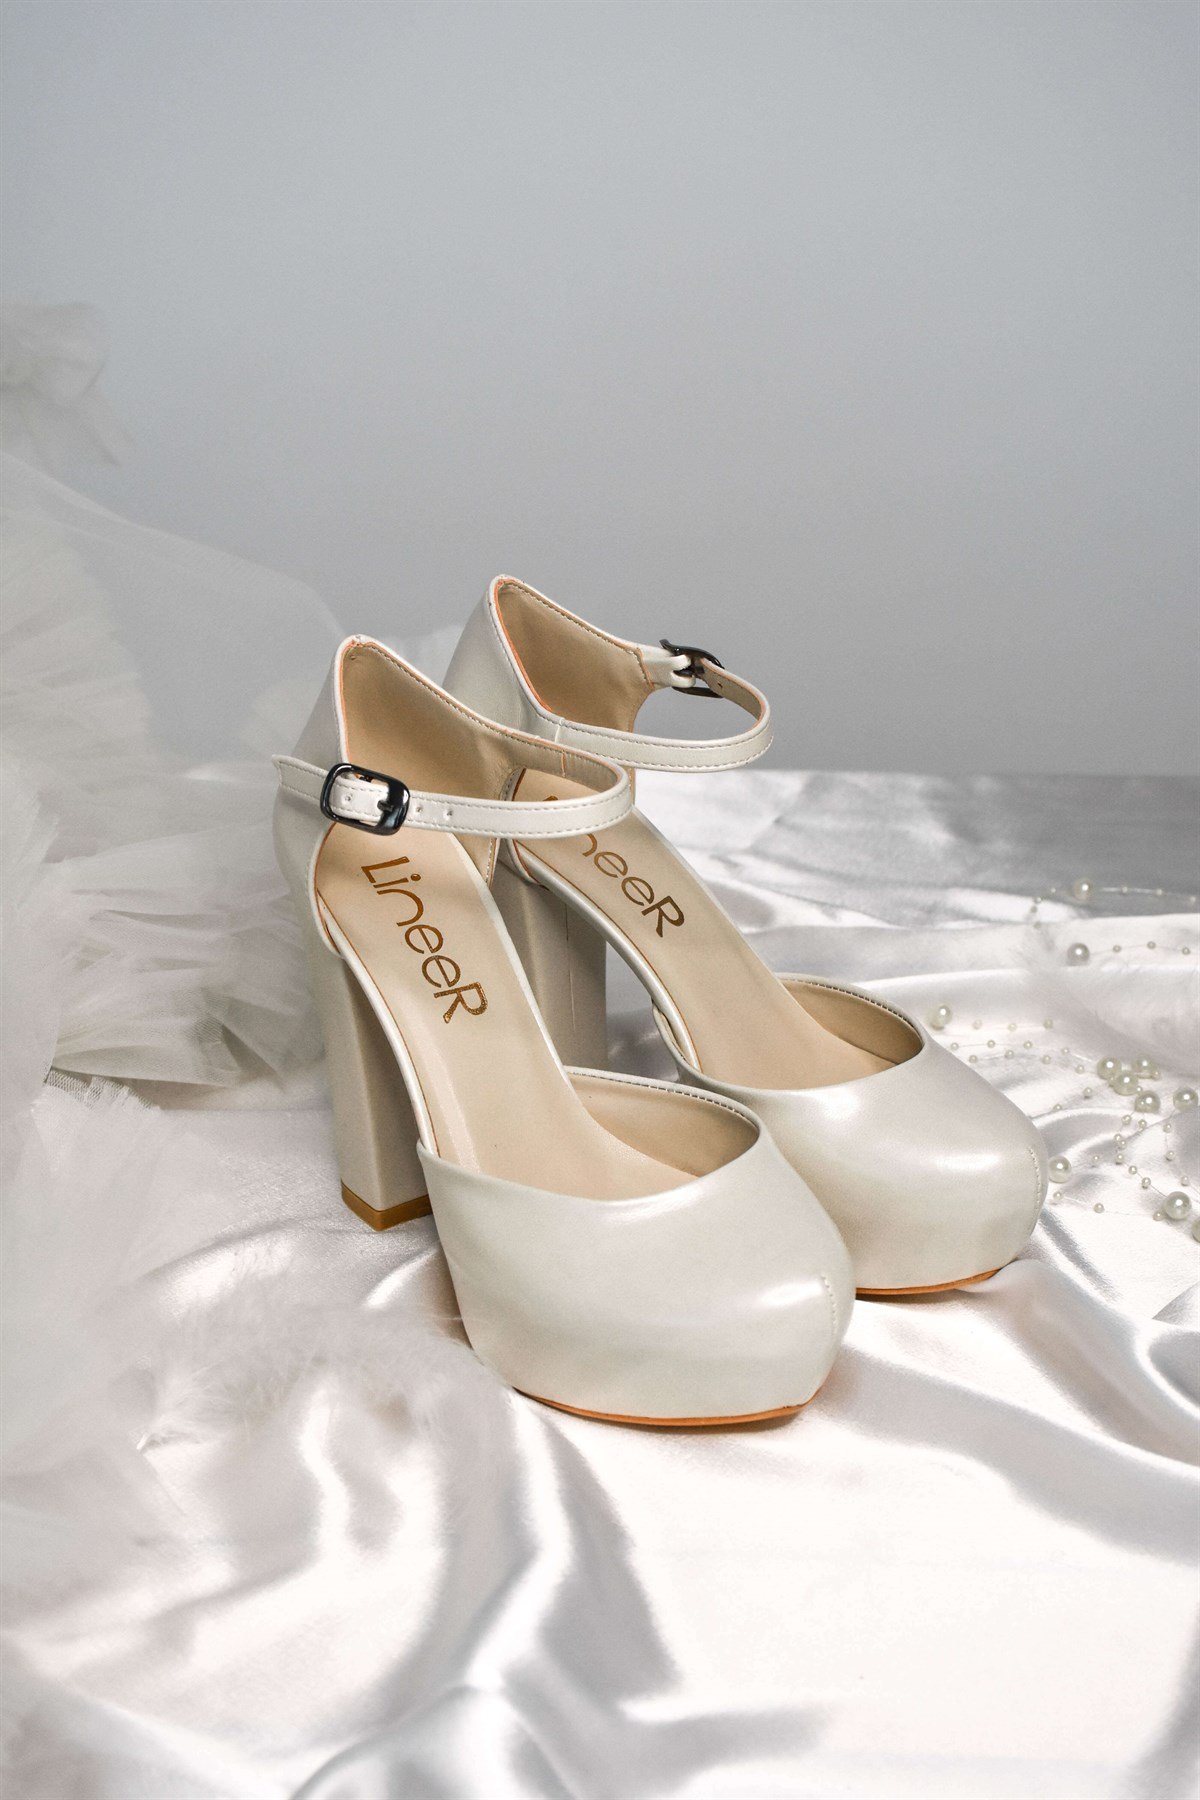 Kadın Sedef Beyaz Renk 12 Cm Platform Topuklu Abiye Gelin Ayakkabısı Lnr62ks